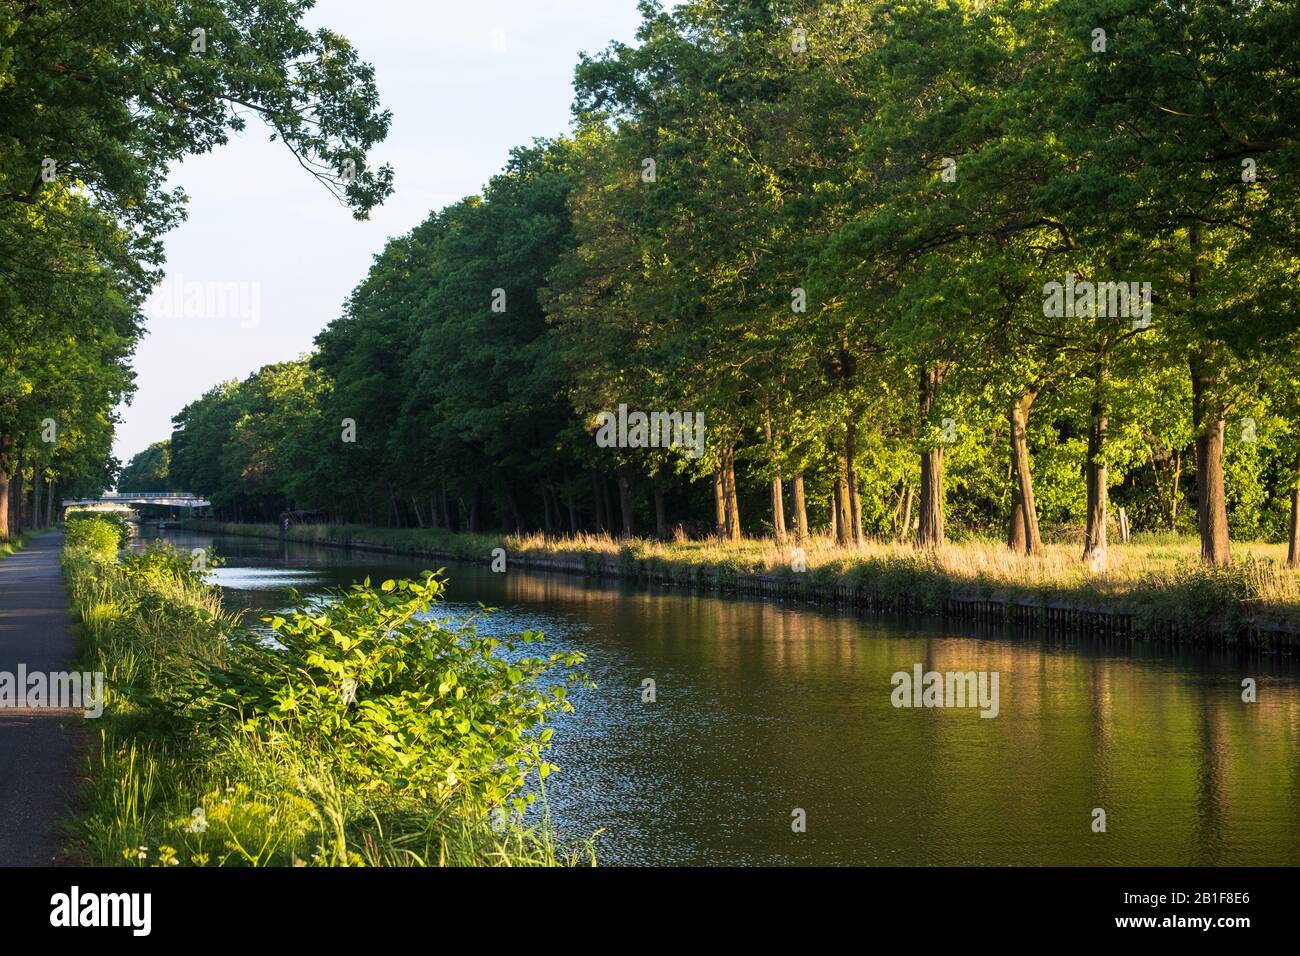 Partie paisible du canal de Dessel-Turnhout-Schoten.Un sentier de randonnée pédestre et cyclable se trouve le long de l'eau, de riches arbres verts complètent le tableau. Banque D'Images